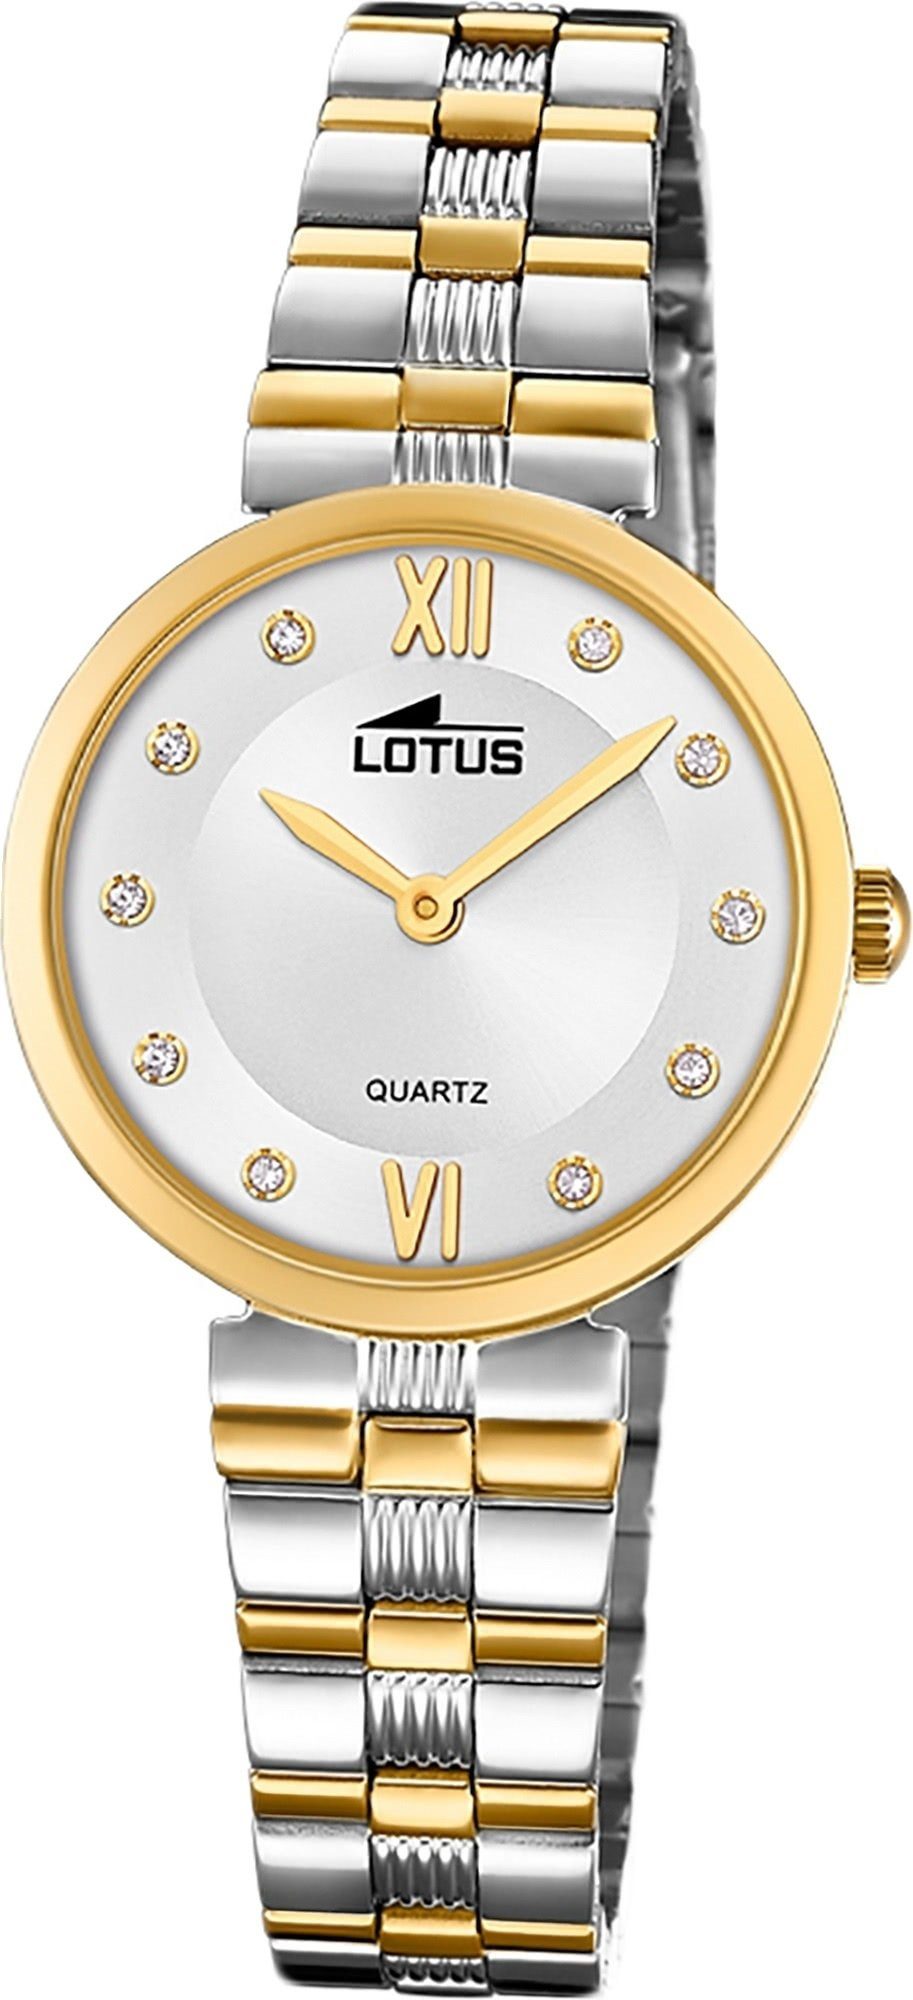 Damen Uhren Lotus Quarzuhr D2UL18542/3 LOTUS Edelstahl Damen Uhr 18542/3, Damenuhr mit Edelstahlarmband, rundes Gehäuse, klein (